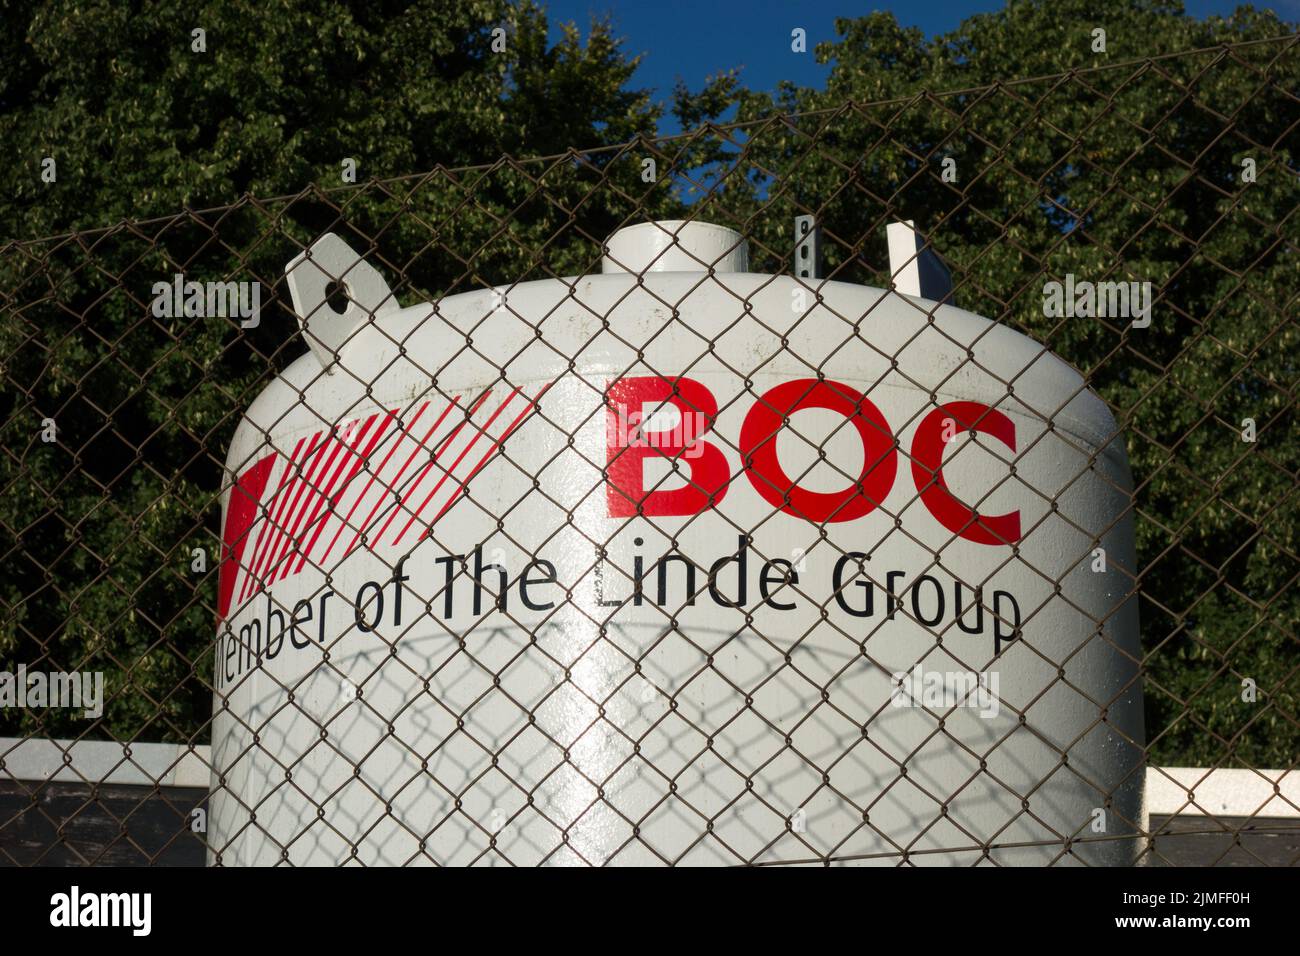 Un grand réservoir d'oxygène liquide BOC dans le parc d'un hôpital Banque D'Images